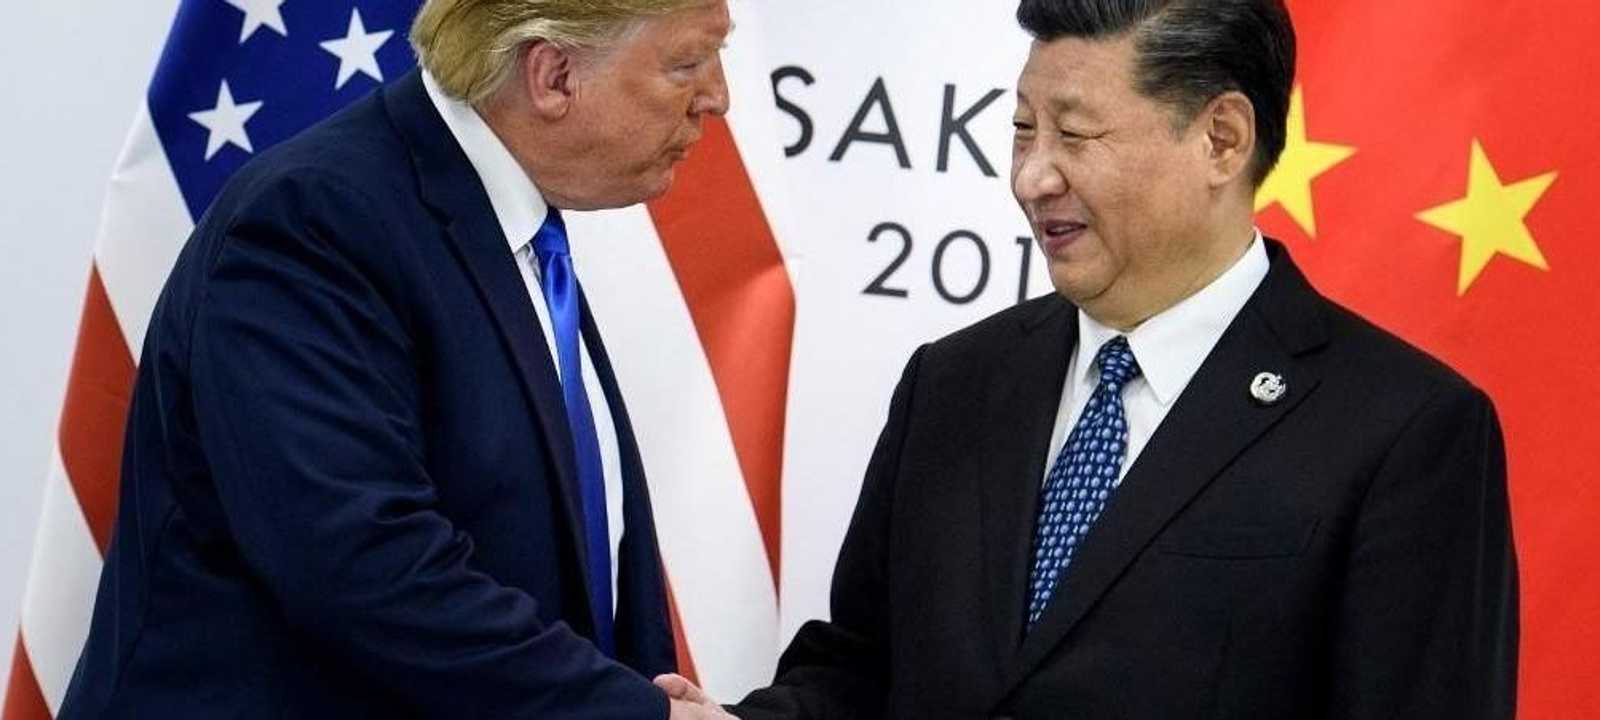 ترامب في لقاء مع نظيره الصيني